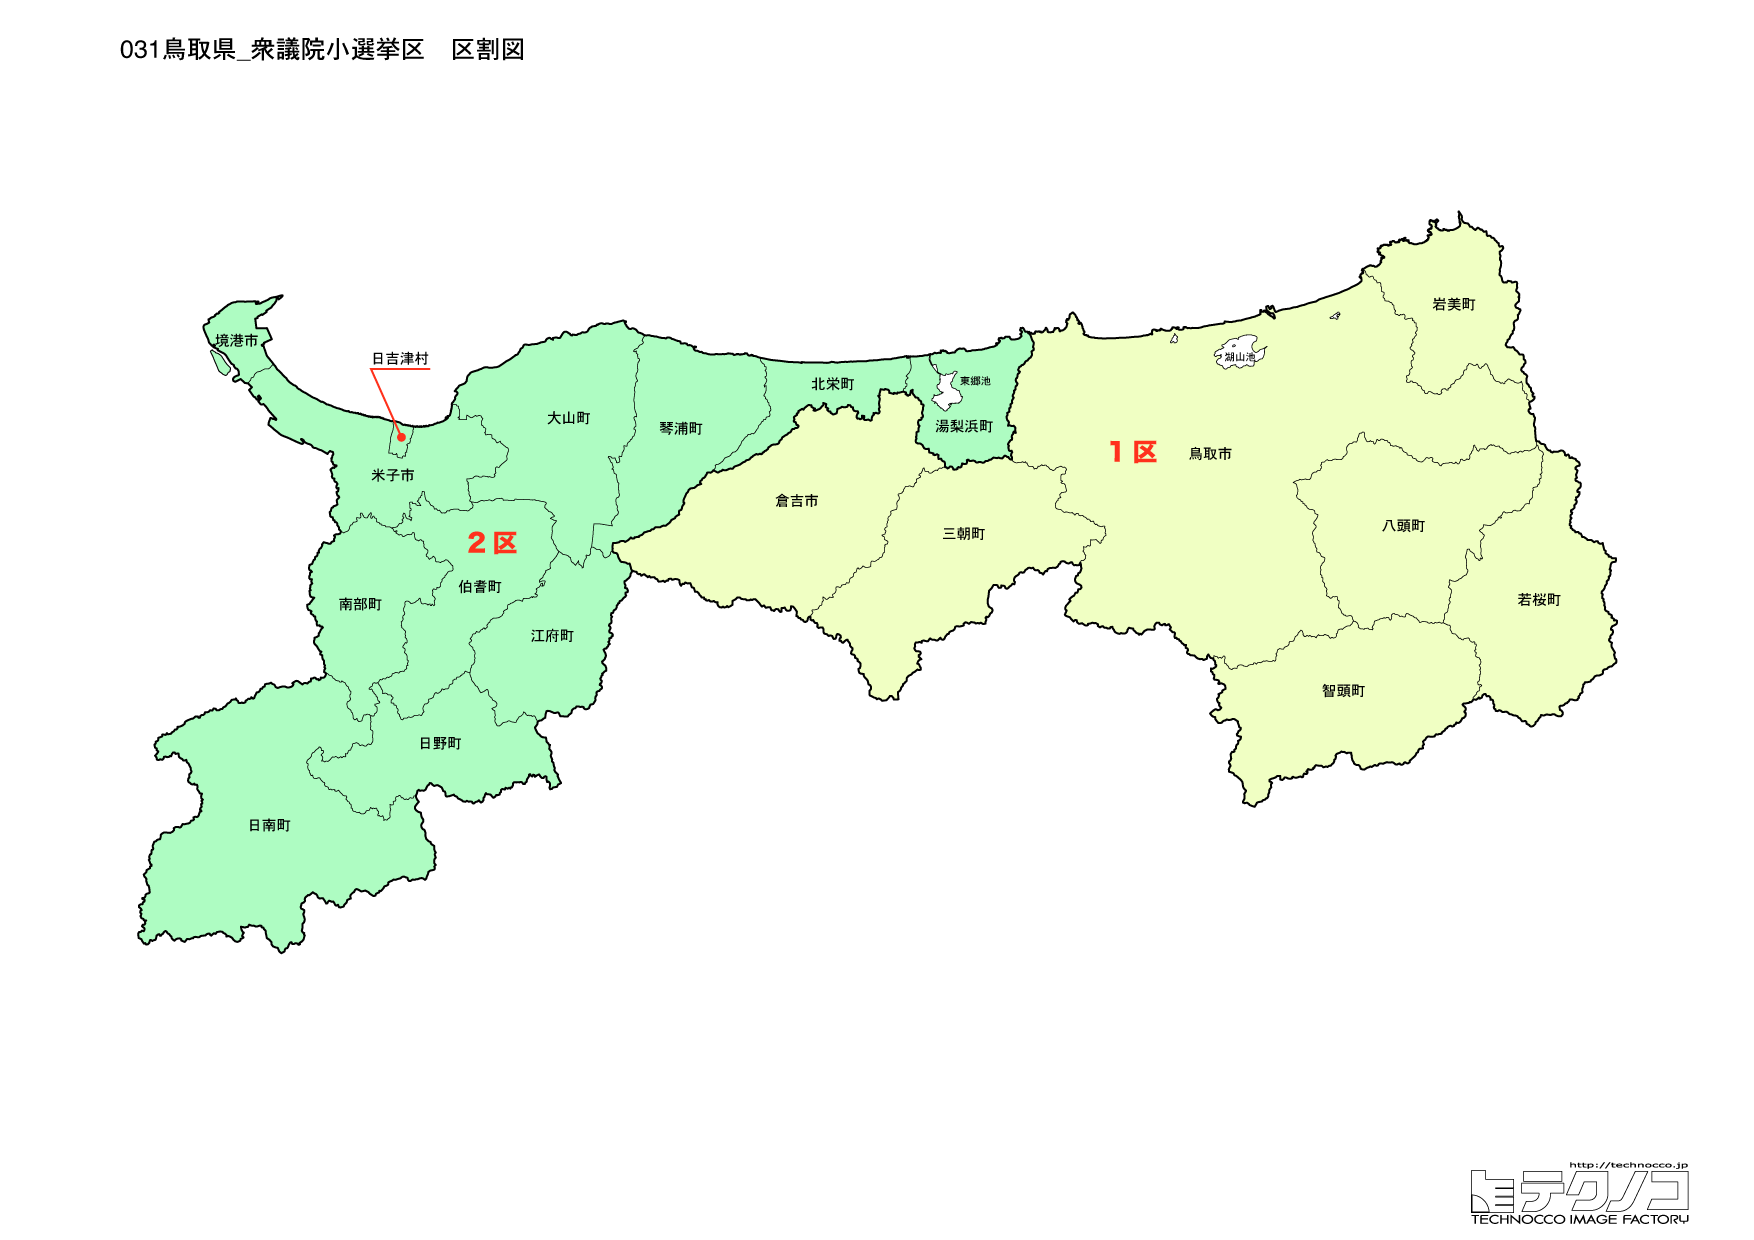 鳥取県小選挙区区割り図2022改正